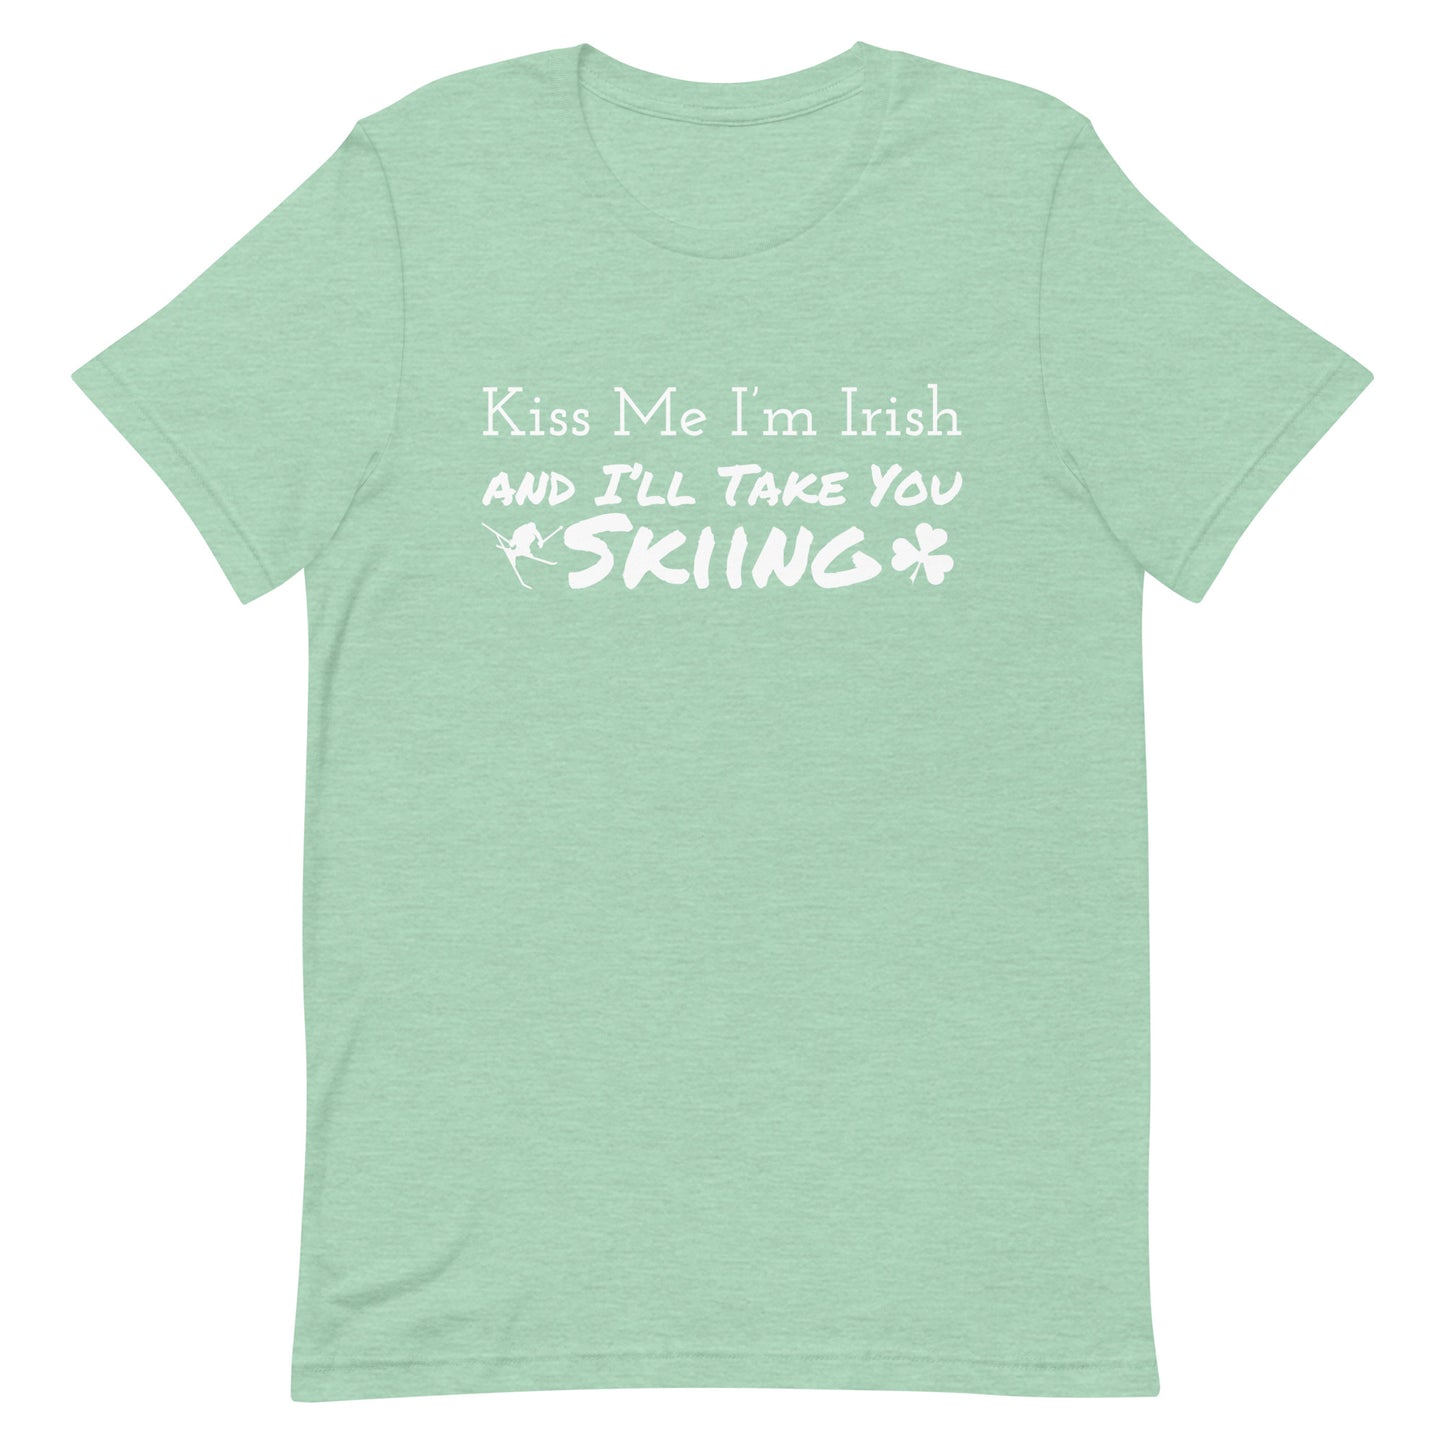 Unisex t-shirt (Kiss Me I'm Irish)